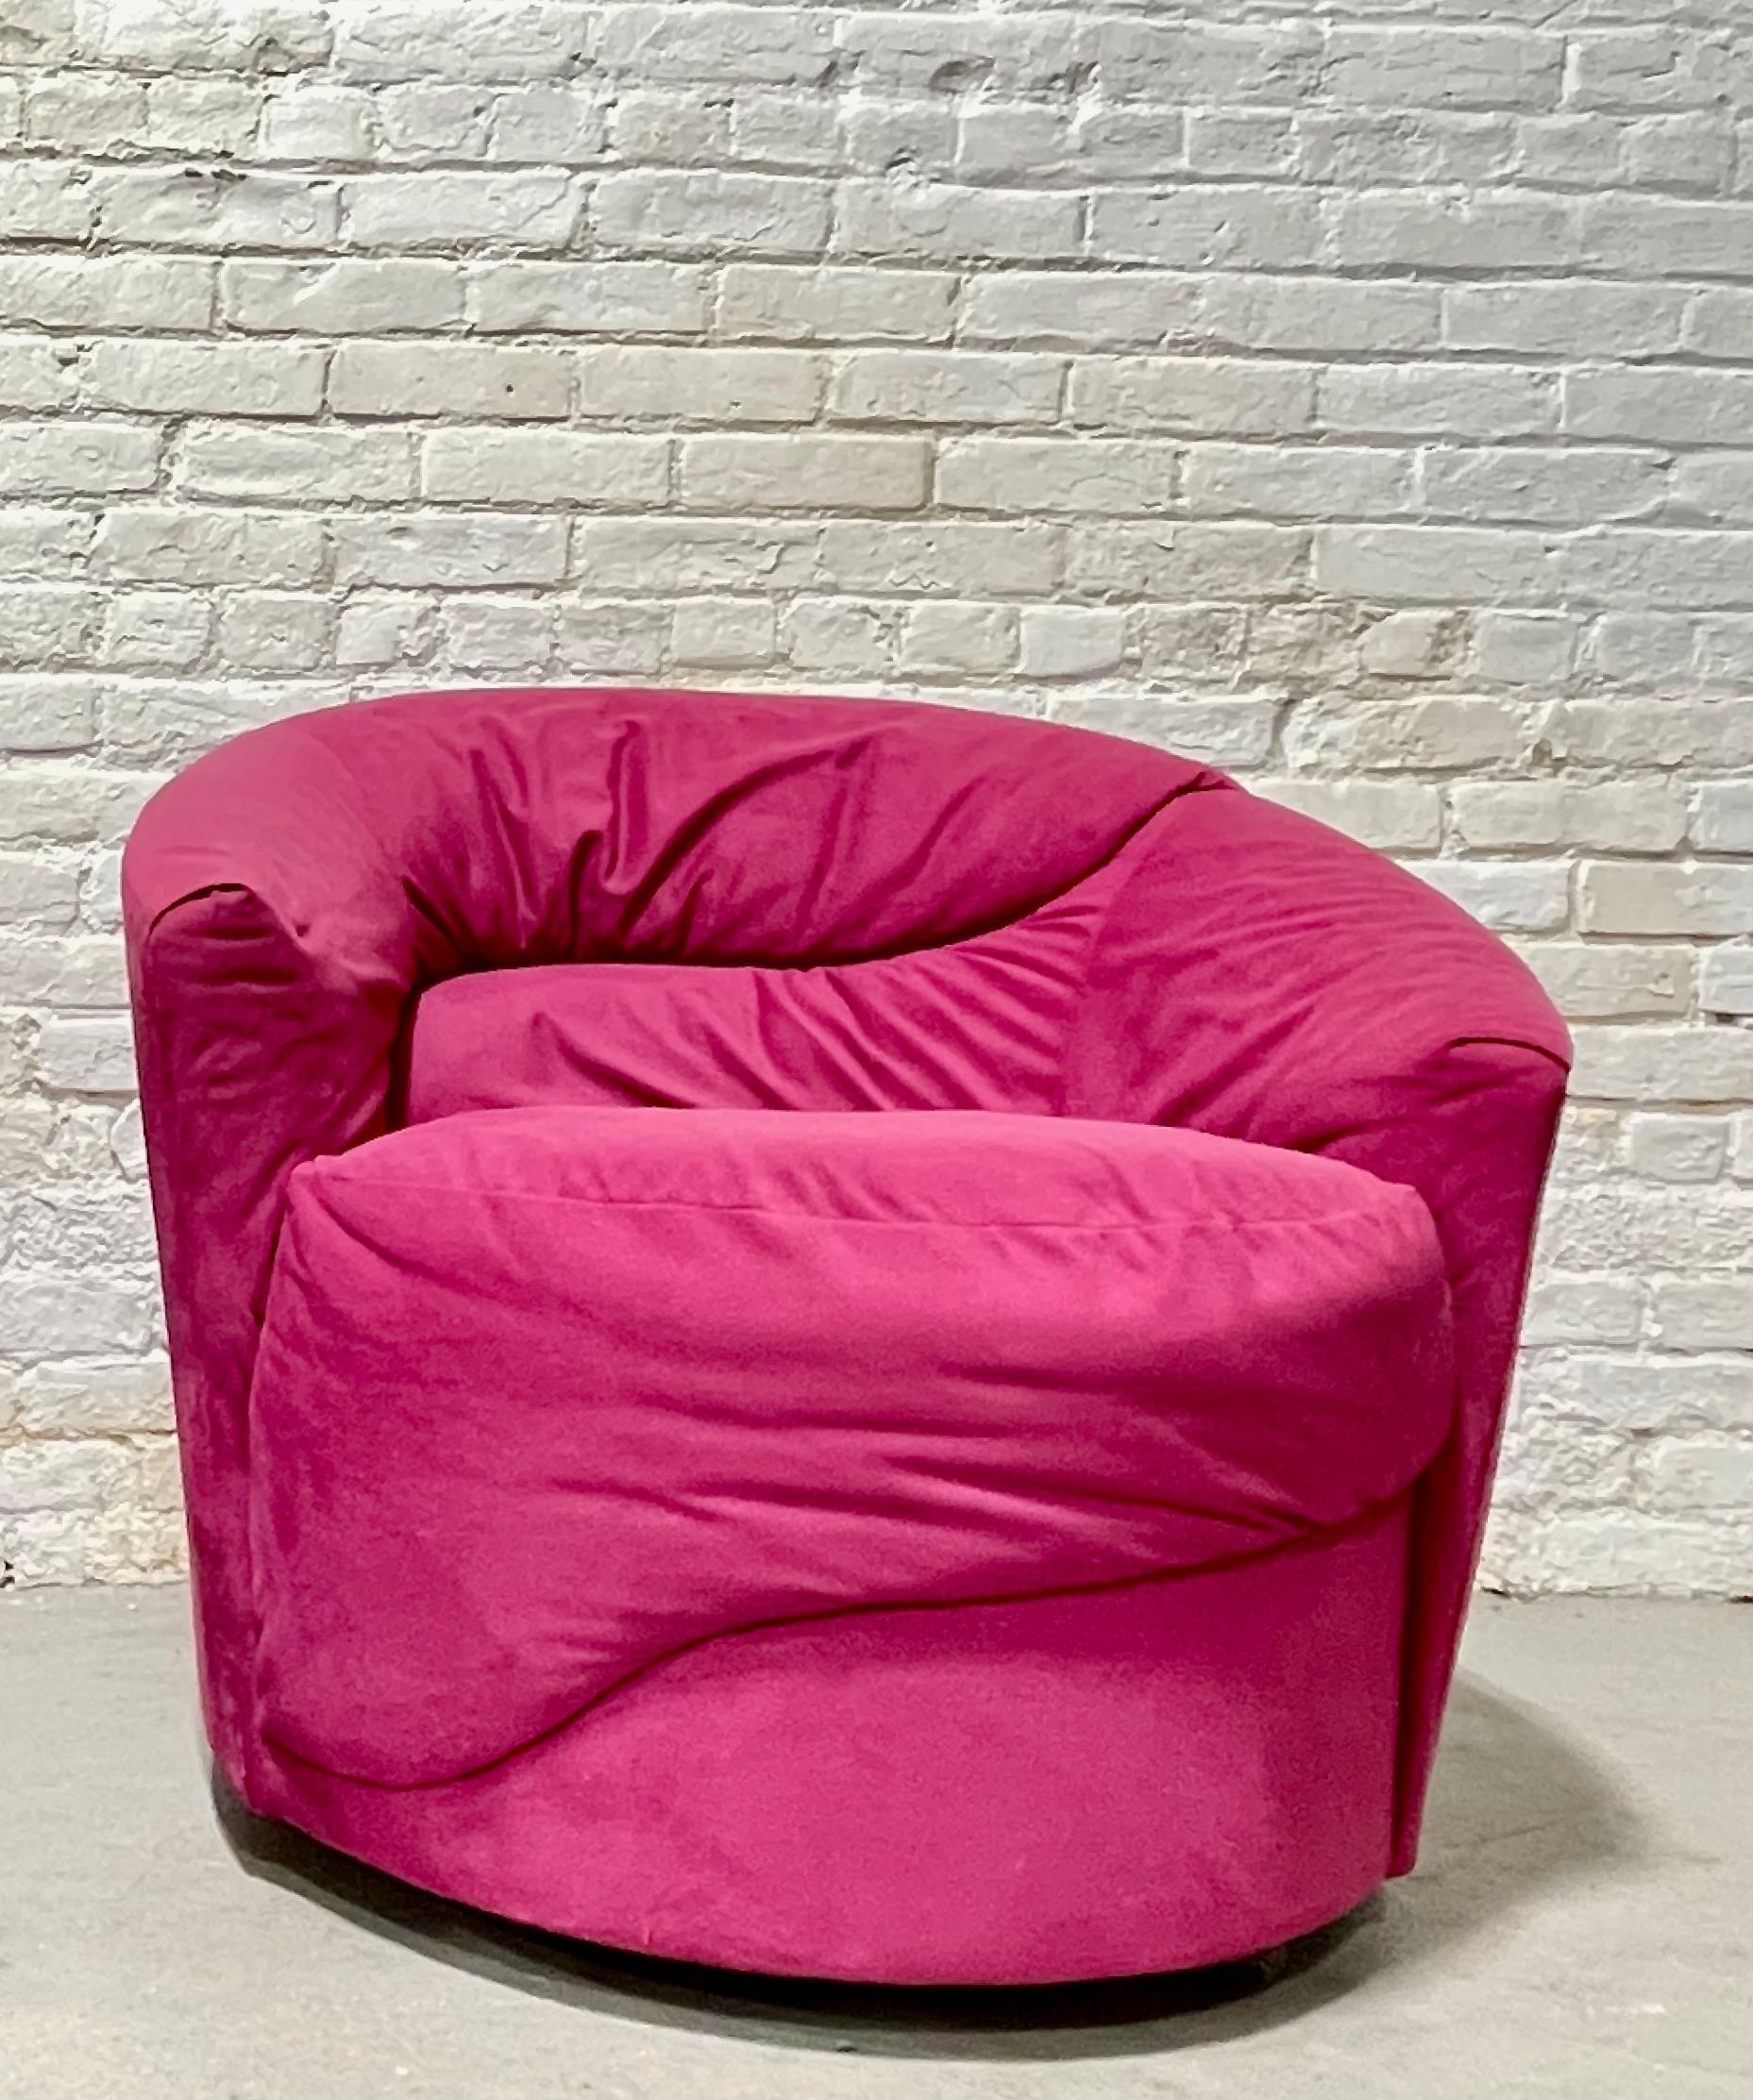 Postmoderne / Mid Century Modern Swivel Lounge Chair / club chair / fauteuil dans le style de Vladimir Kagan. Tapis rose super sexy. Chaise extrêmement confortable avec un rembourrage en peluche.  Très bon état avec quelques légères traces d'usure